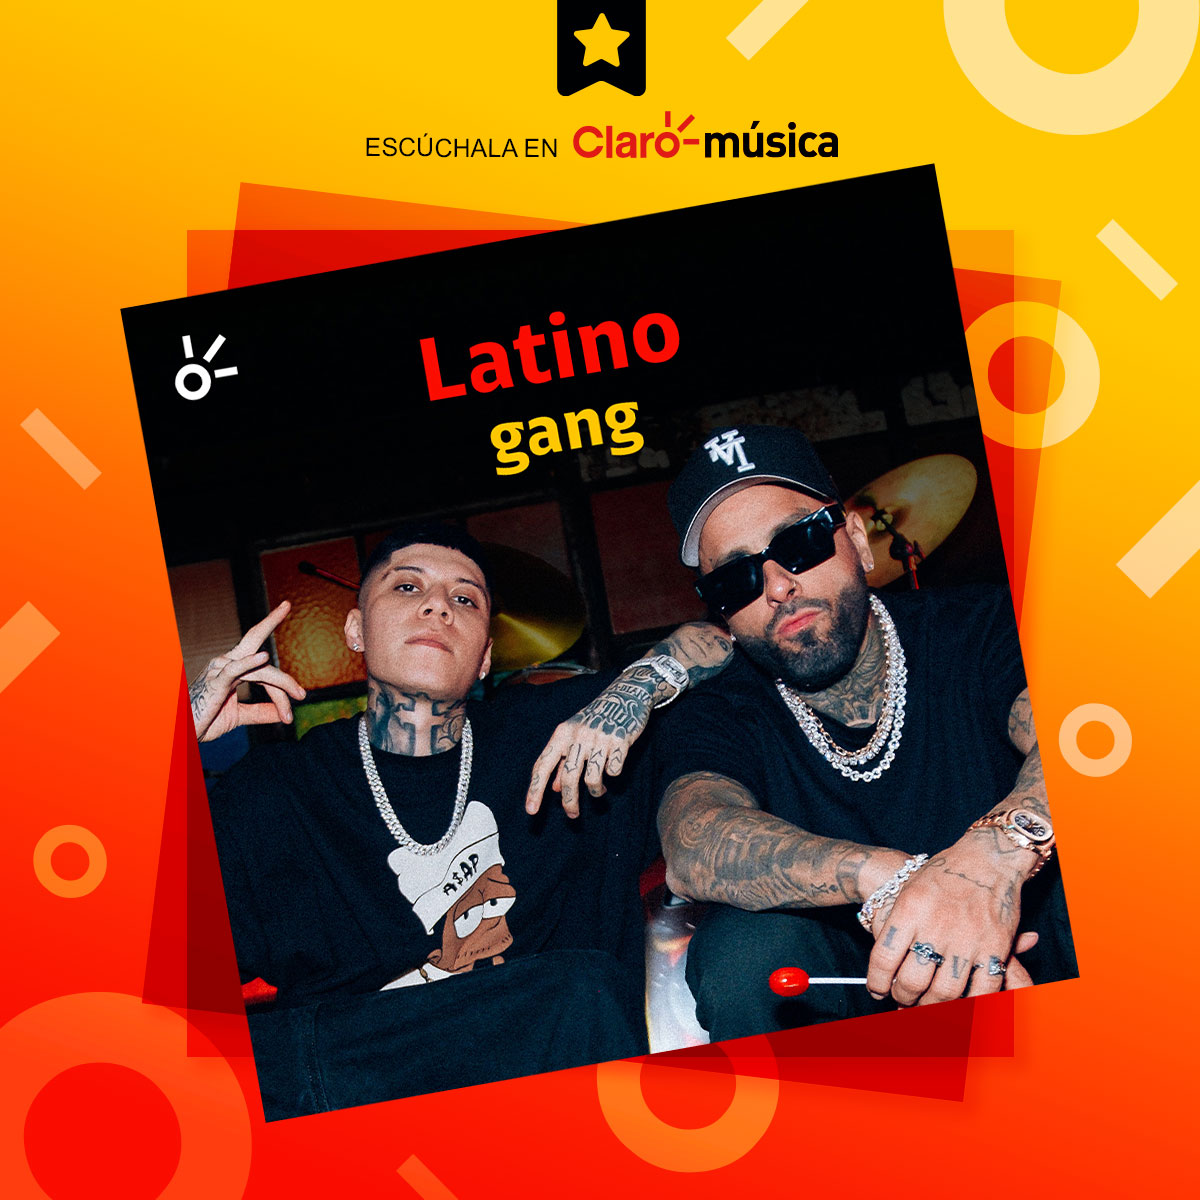 🎶🔥 La música latina está conquistando el mundo, ¡así que dale play a #LatinoGang y escucha #UnaRayaMás de @NickyJamPR y @santa_fe_klan_! 😎ow.ly/vcrC50OmPnj #Claromúsica #NickyJam #SantaFeKlan